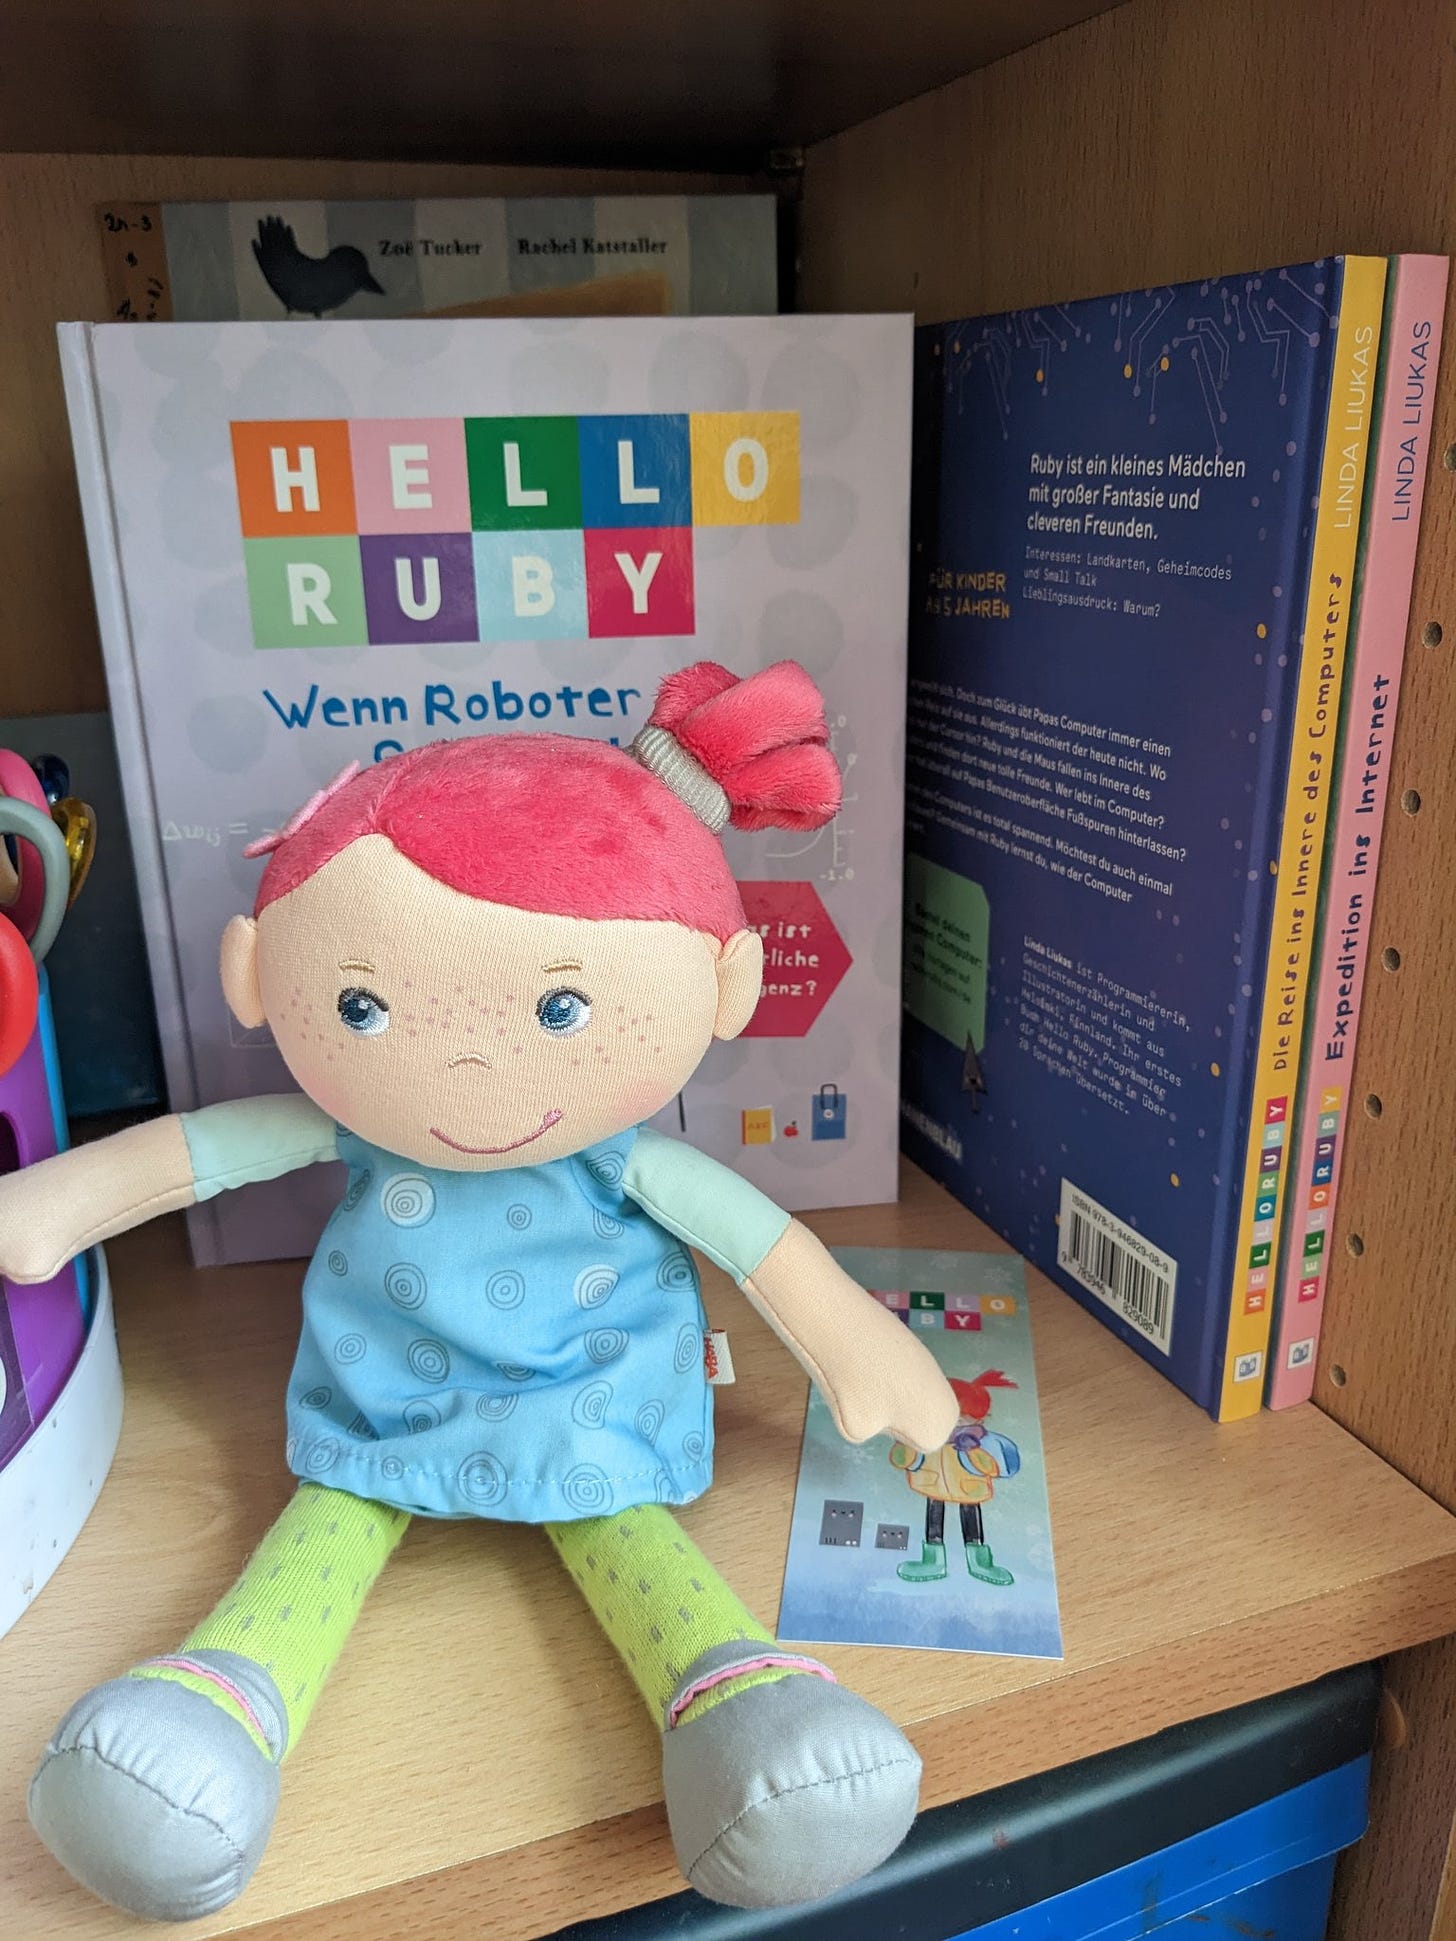 Eine Puppe mit roten Haaren, einem blauen Kleid und einer grünen Hose sitzt im Regal vor den Bücher "Hello Ruby" von Linda Liukas.